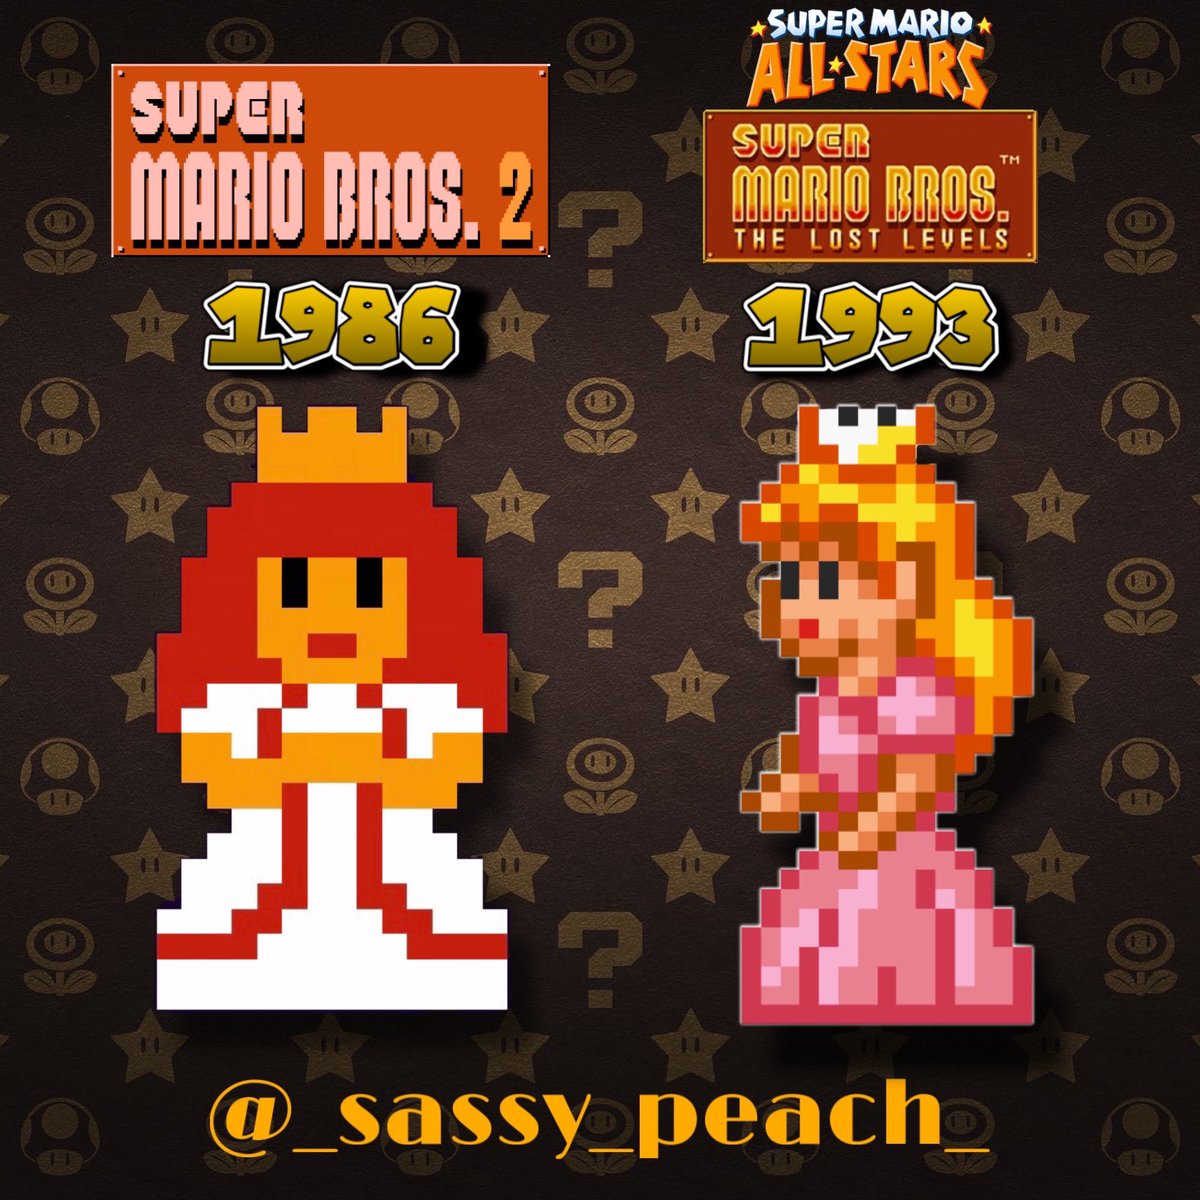 The original vs remake 

#princesspeach #peach #princesspeach👑 #princesspeach🍑 #supermarioallstars #supermarioadvance #supermario #nintendo #supermariobros #supermariobros2 #supermariobrosthelostlevels